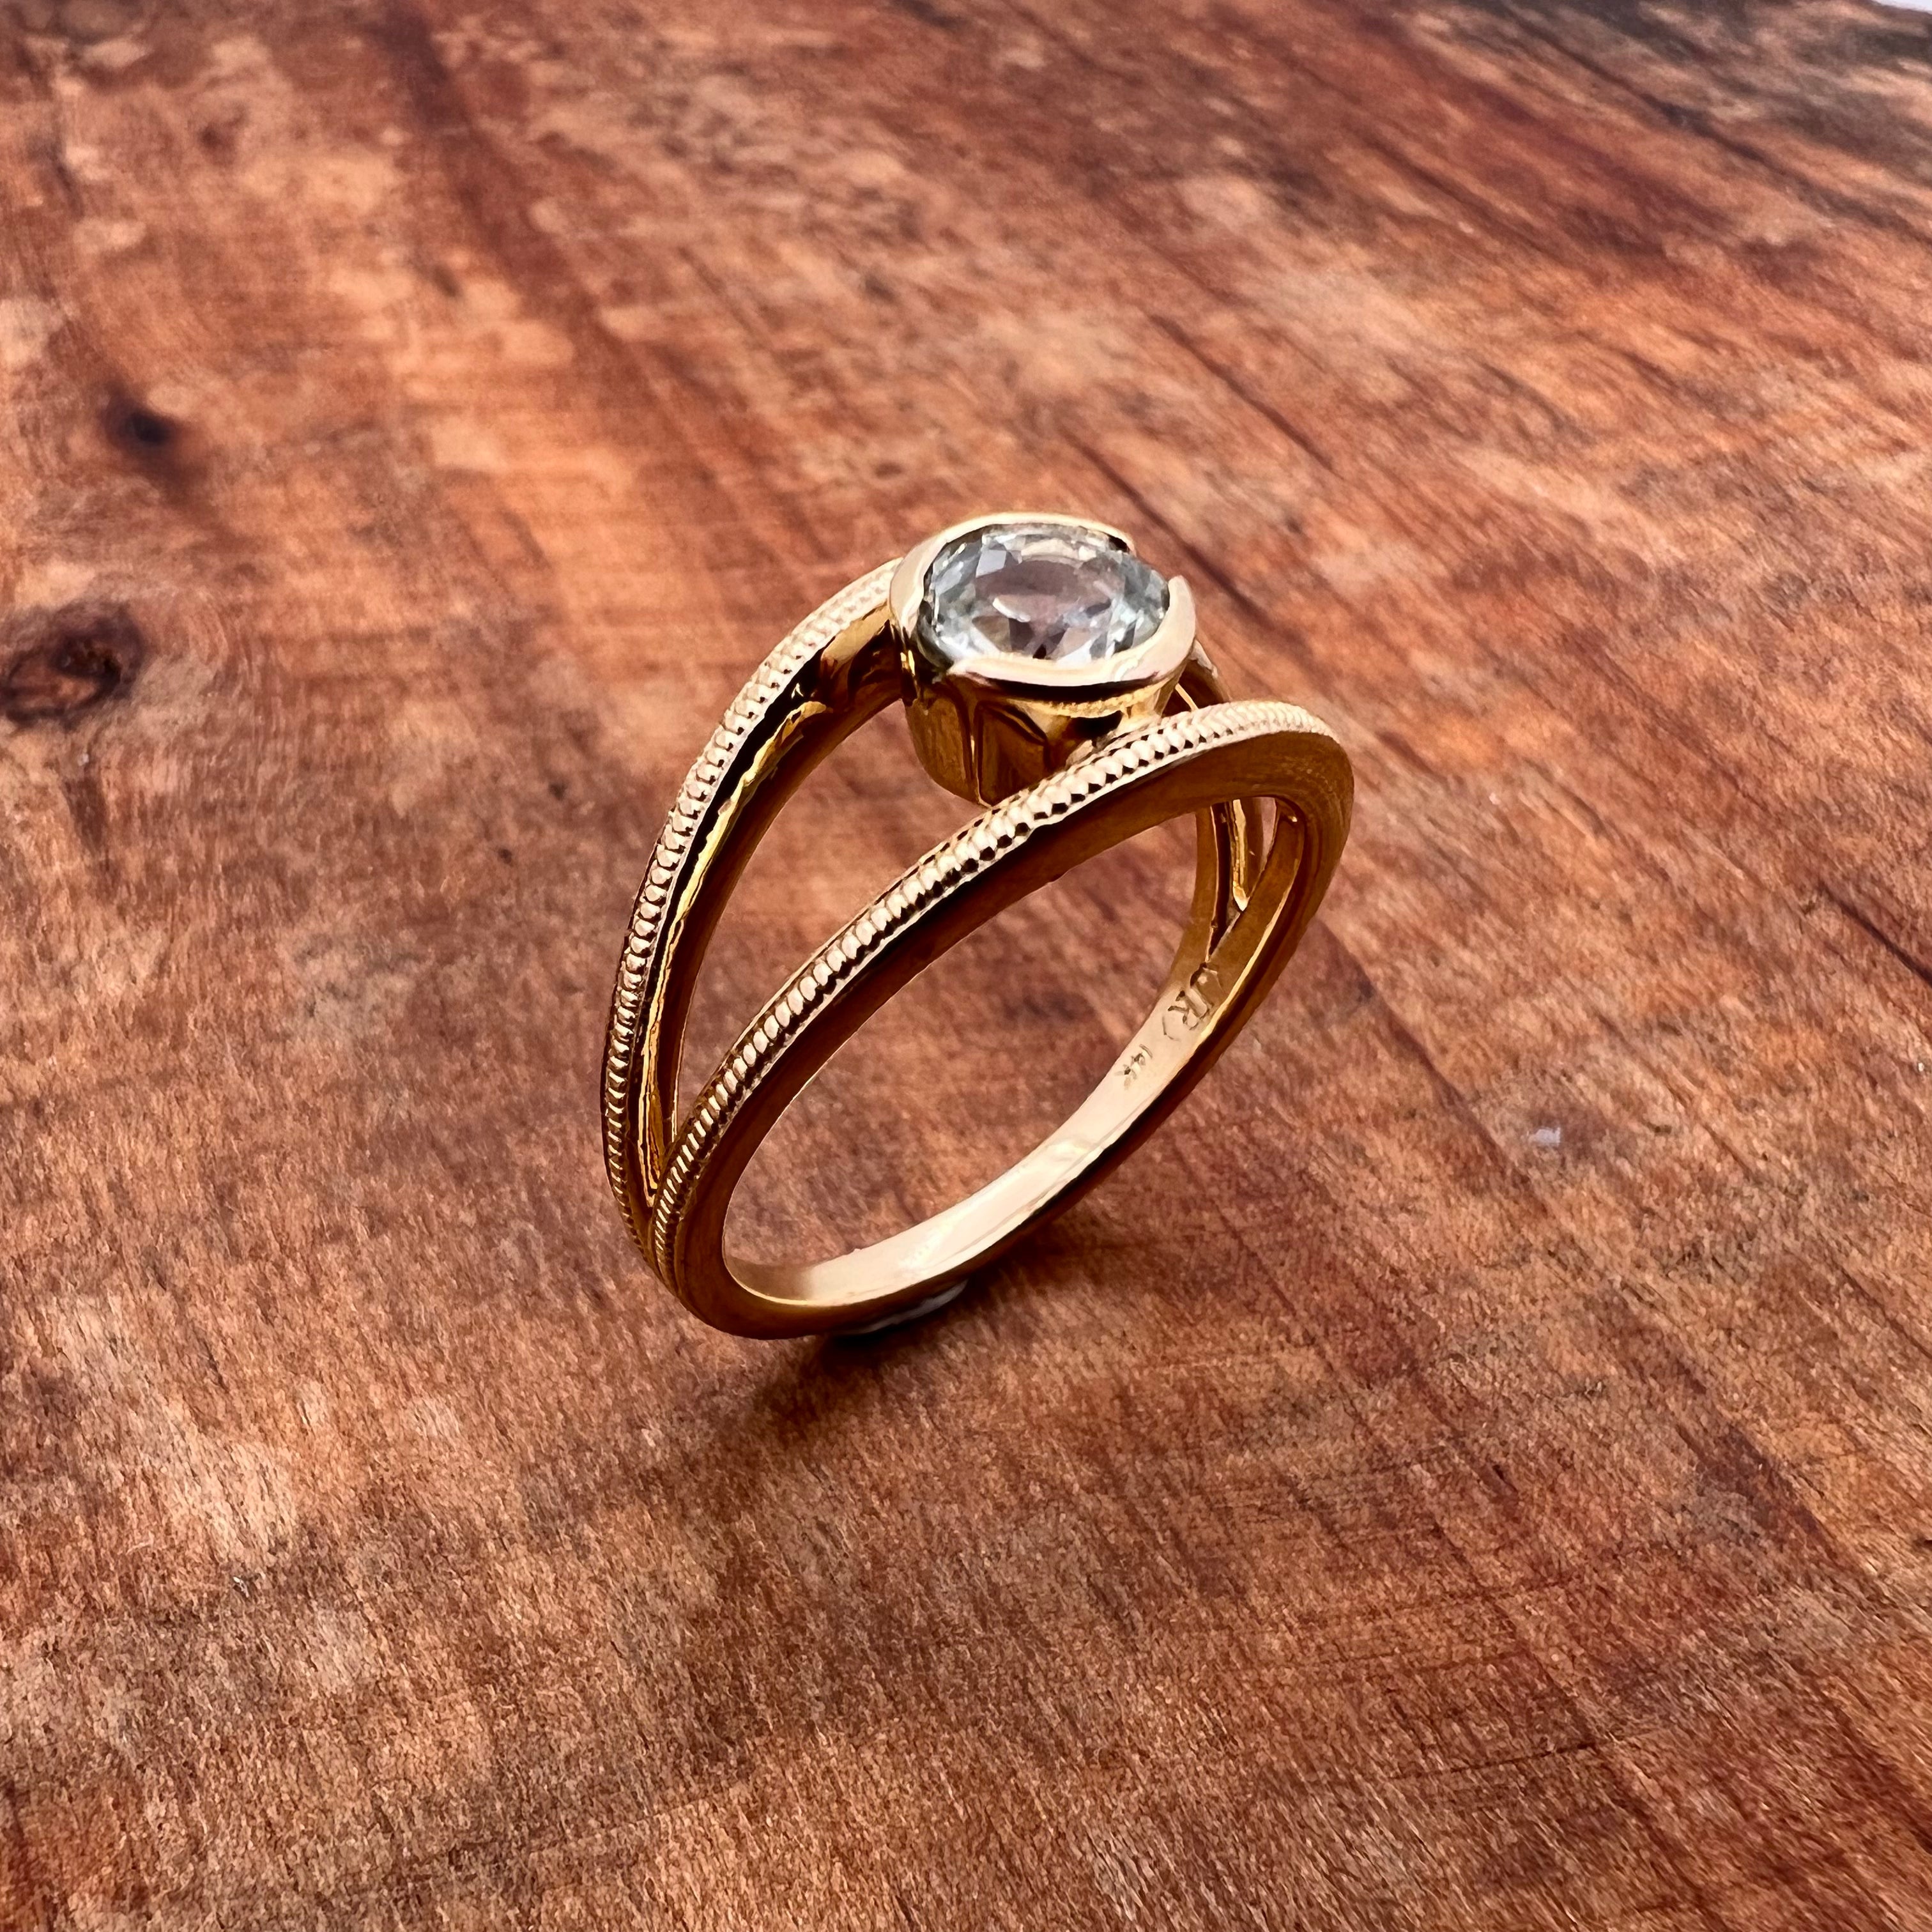 Montana Sapphire in 14k yellow ring